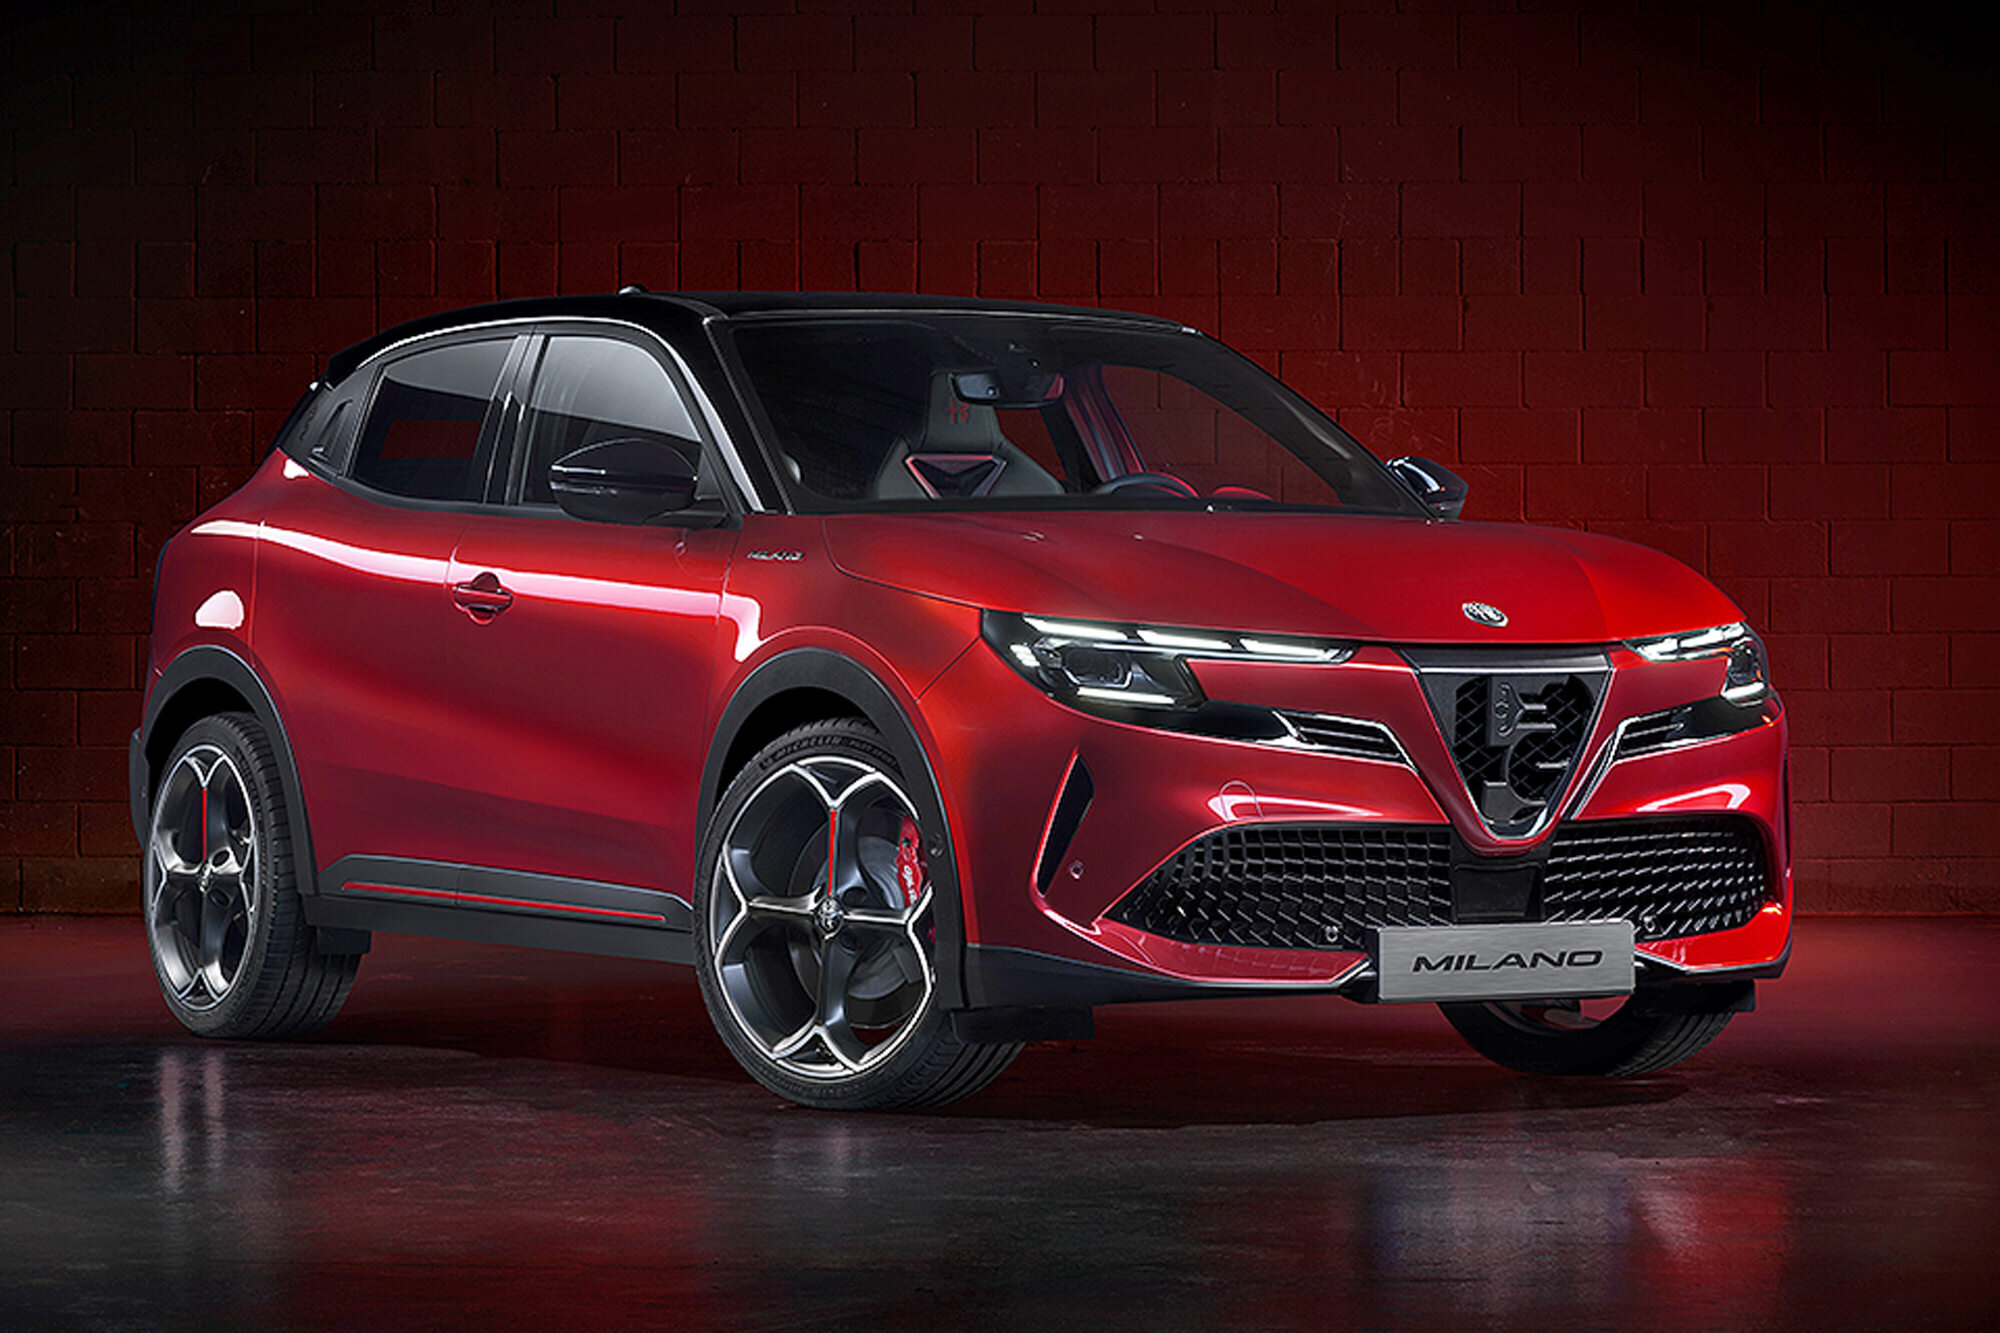 Alfa Romeo představila nový crossover